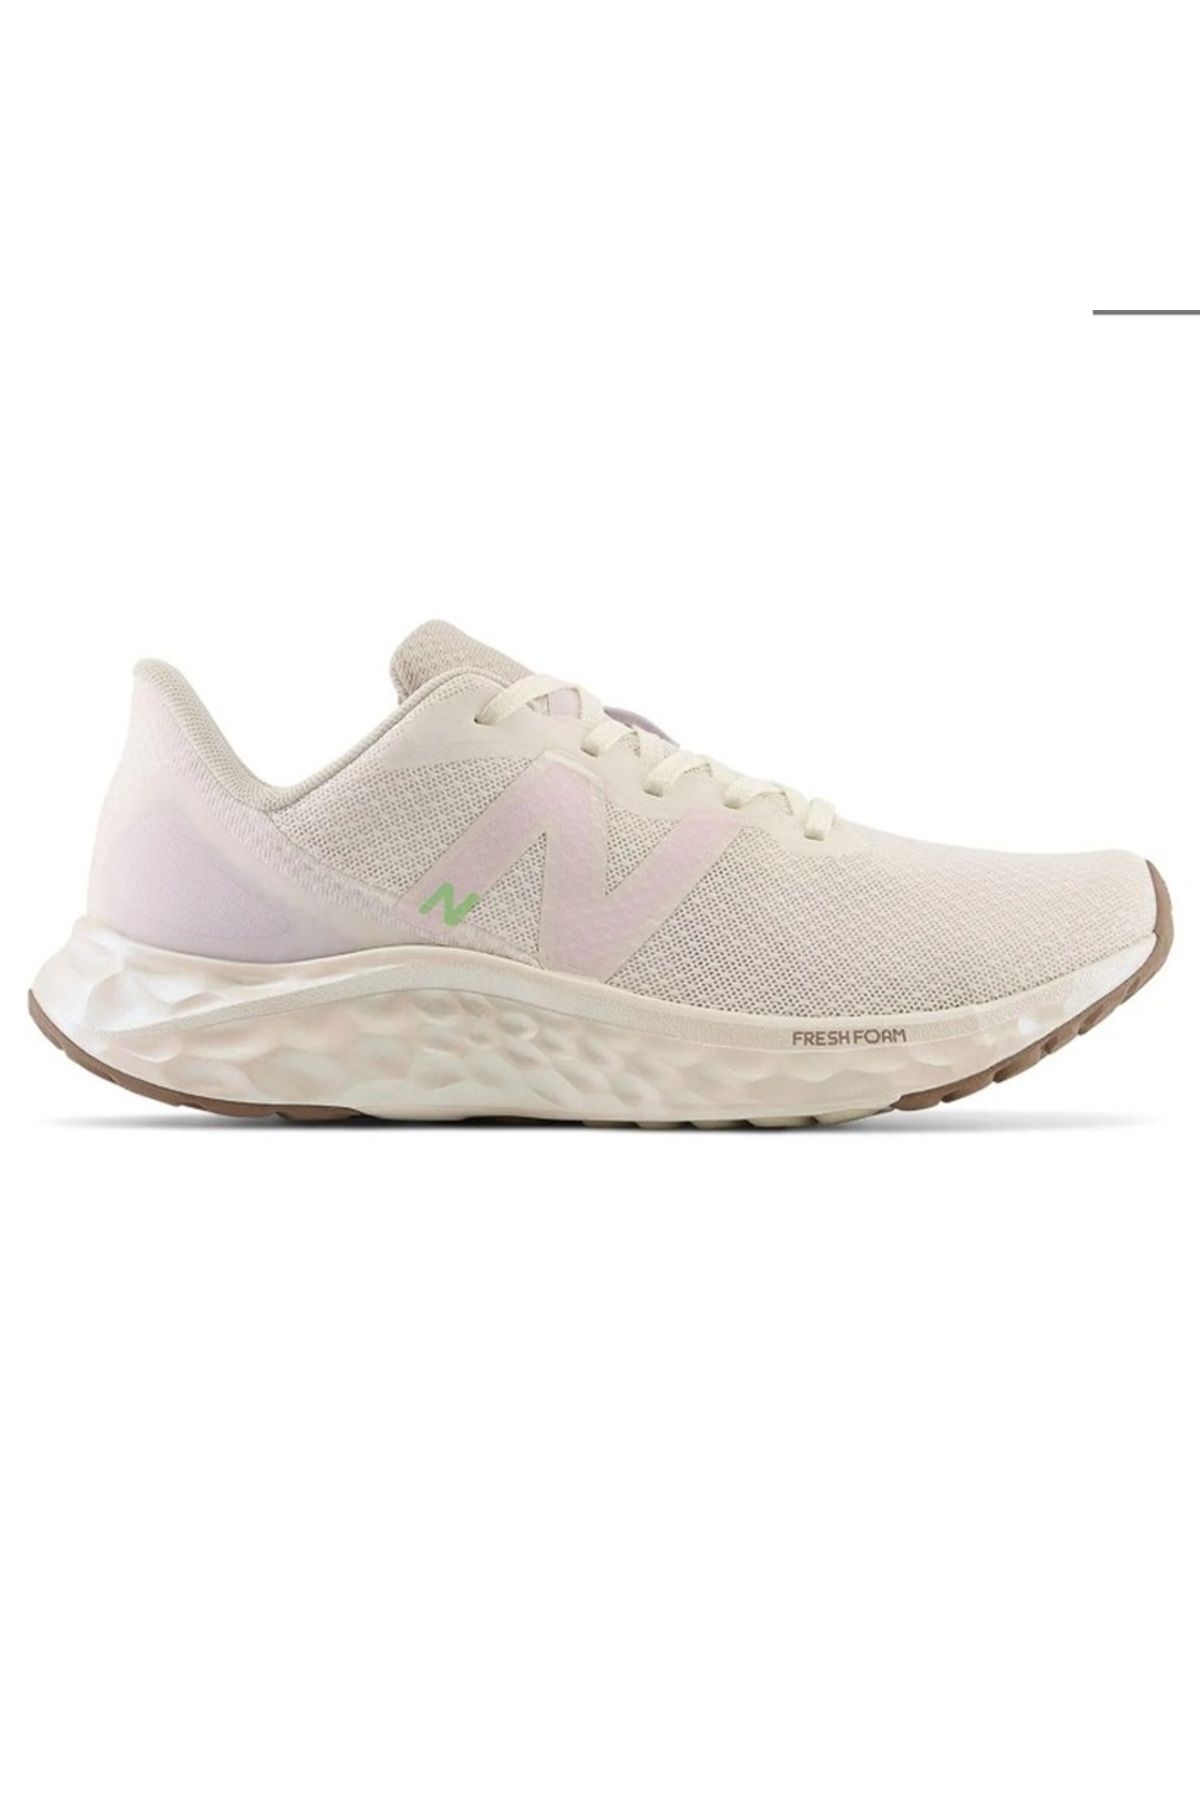 New Balance ARIS NB Running Women Shoes